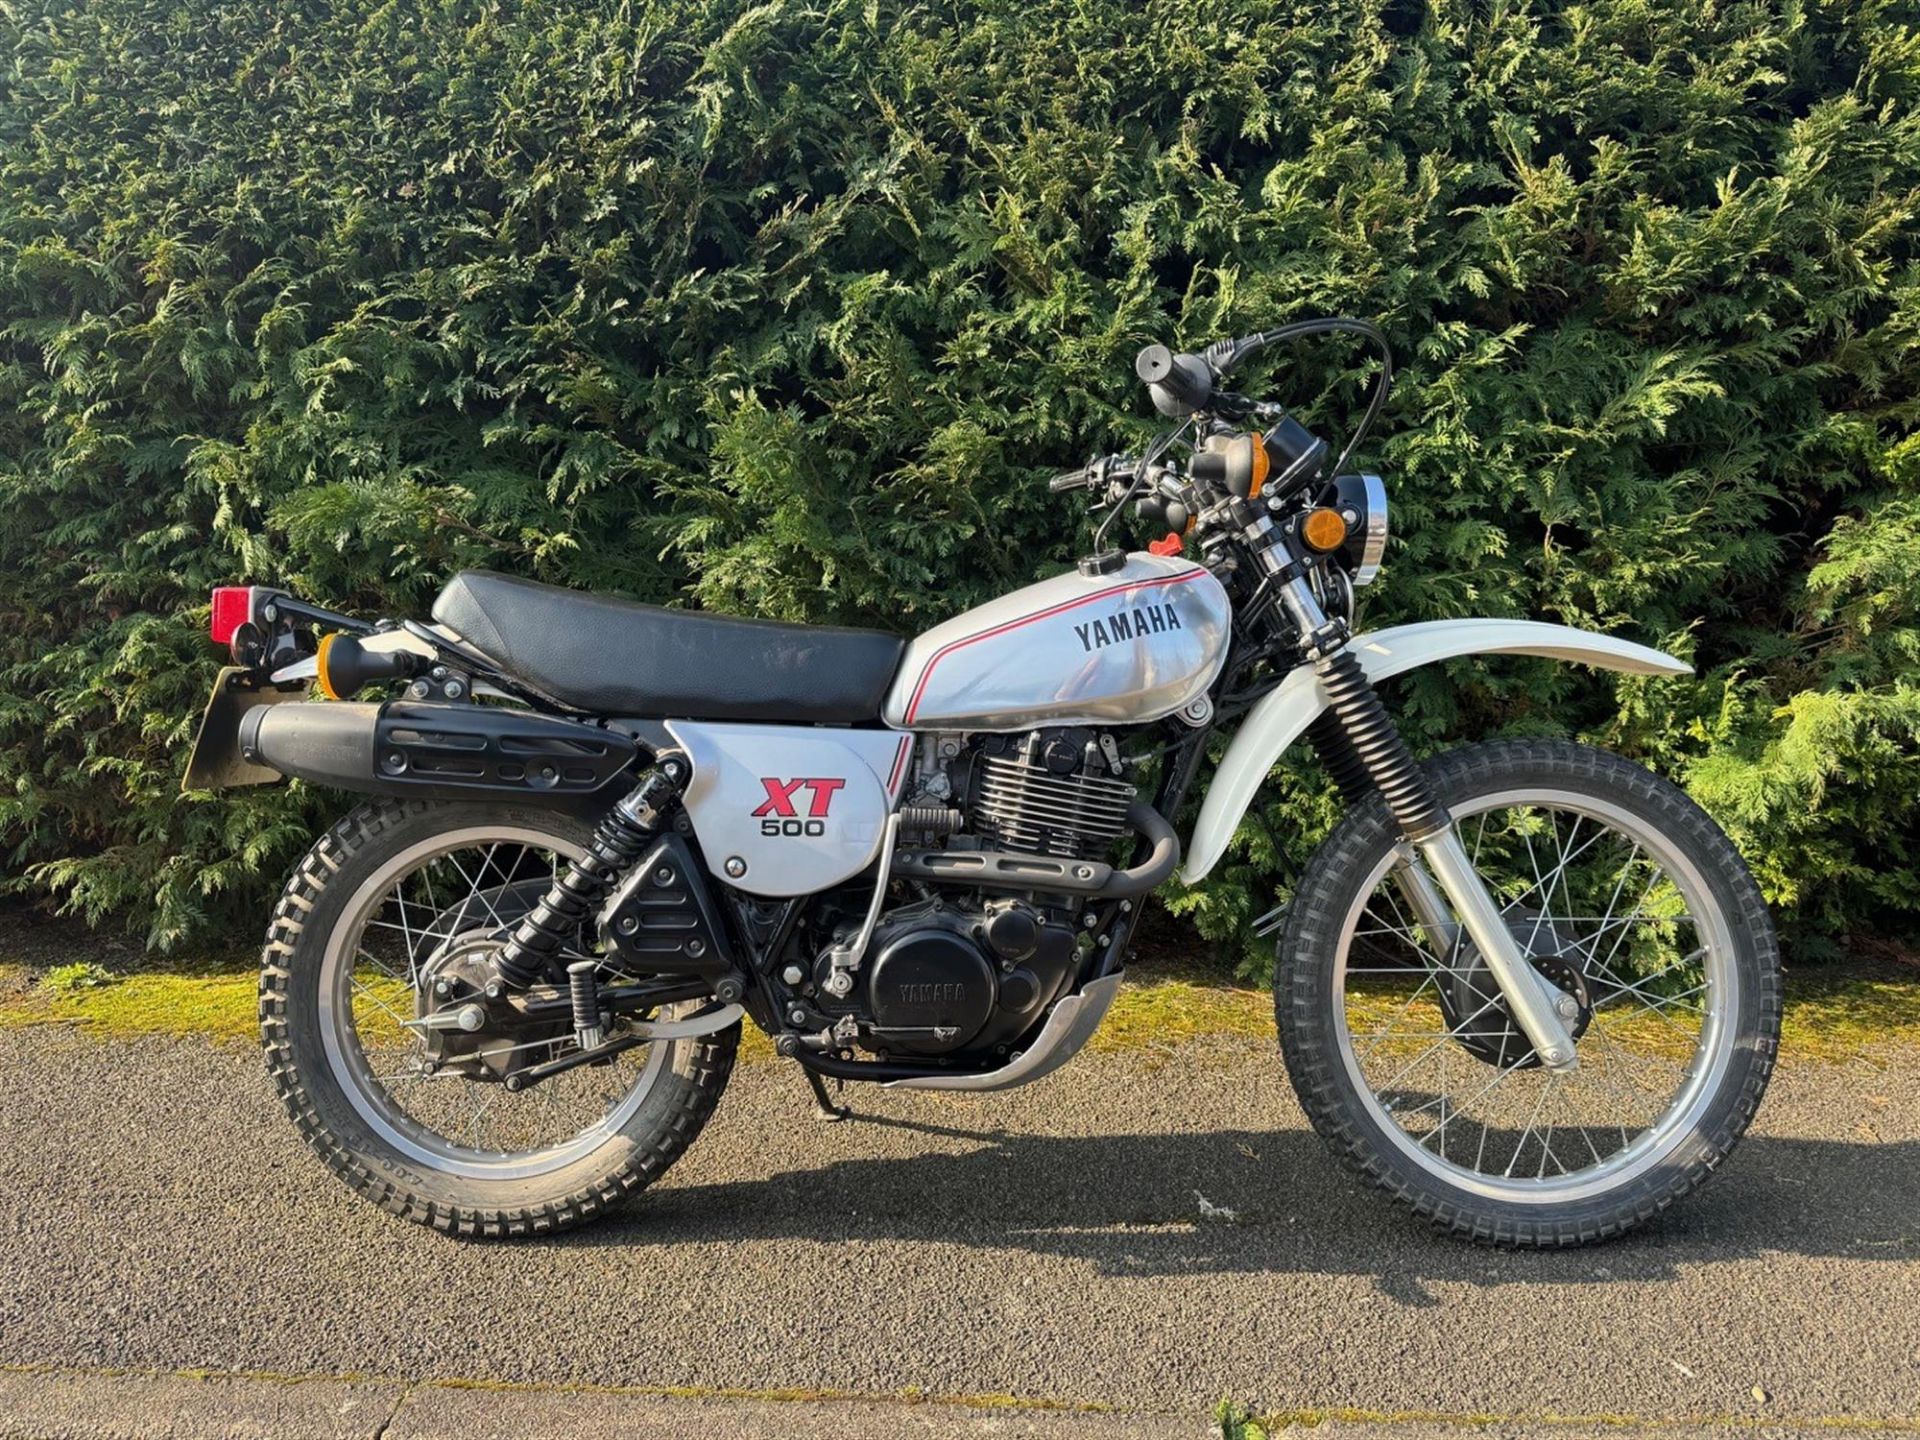 1981 Yamaha XT500 499cc